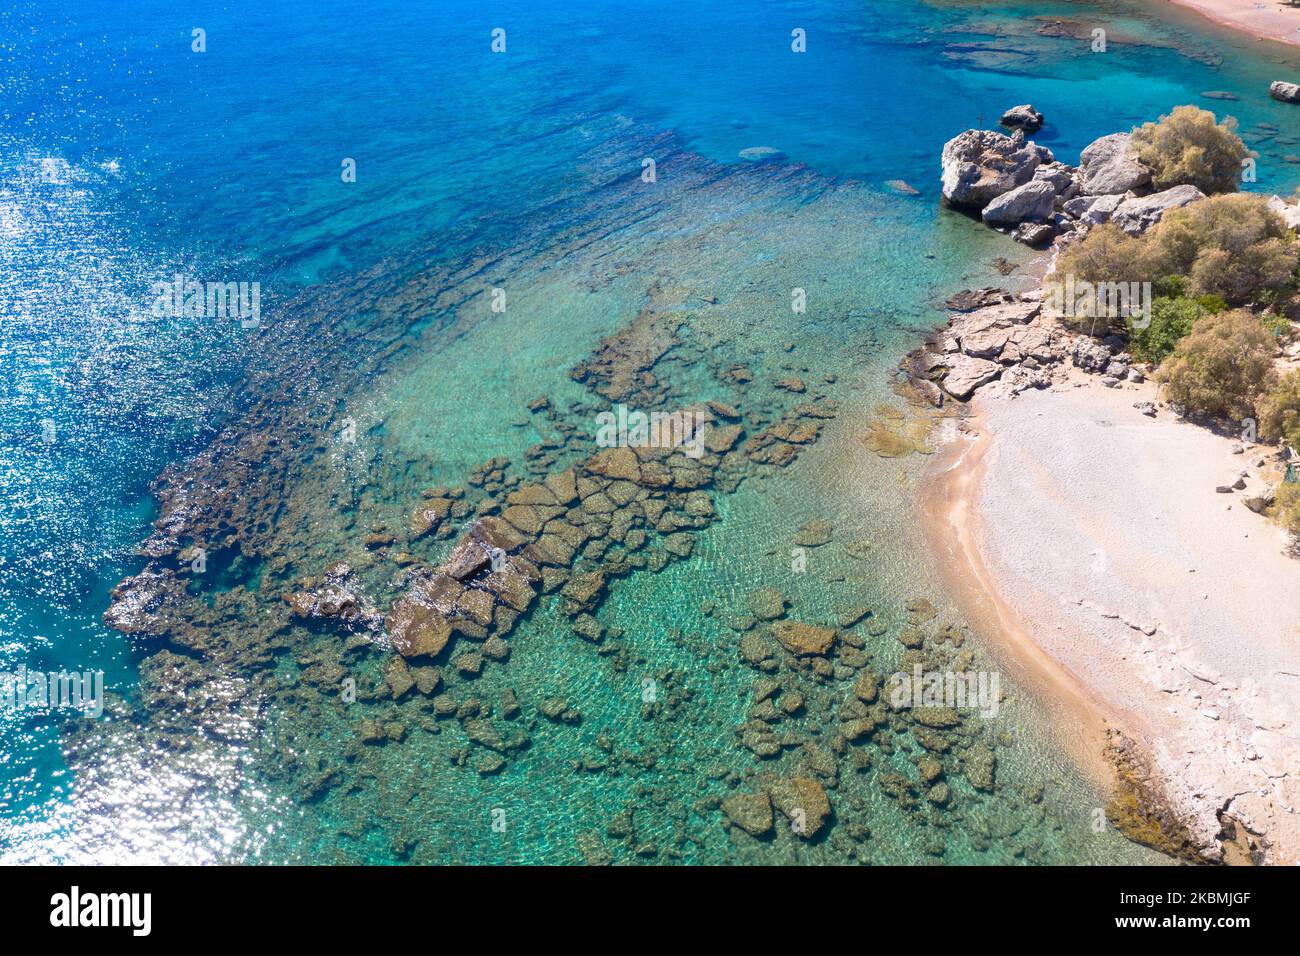 Drohnenfotografie einer ruhigen Felsküste und eines wunderschönen türkisfarbenen Wassers. Mittelmeer, Insel Rhodos, Griechenland. Stockfoto